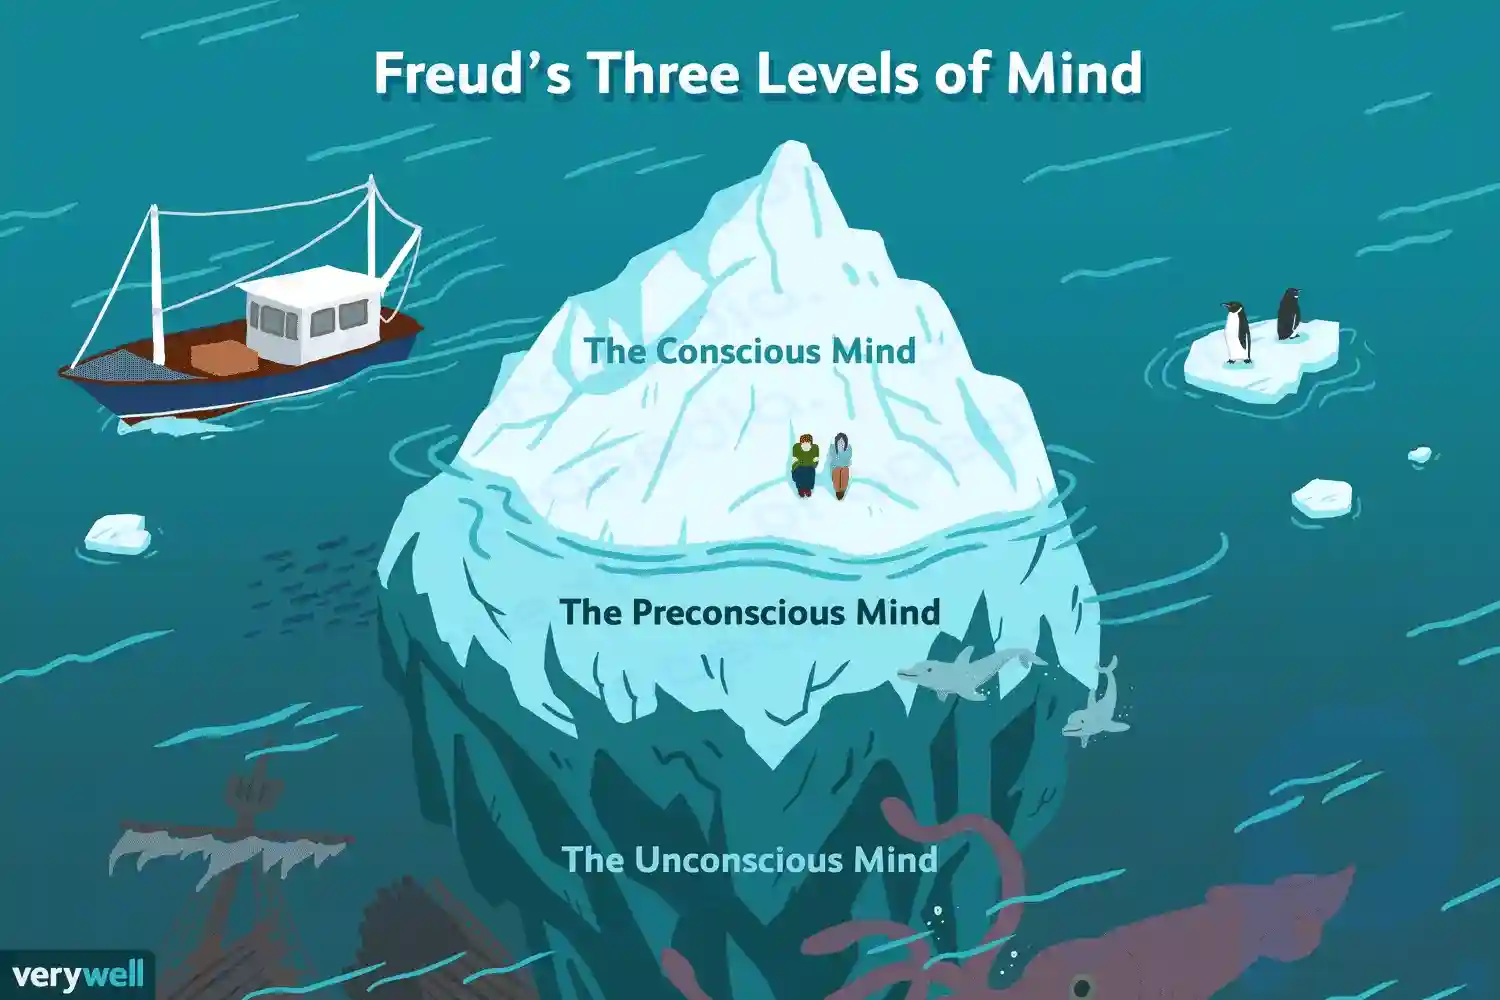 Les trois niveaux d'esprit de Freud